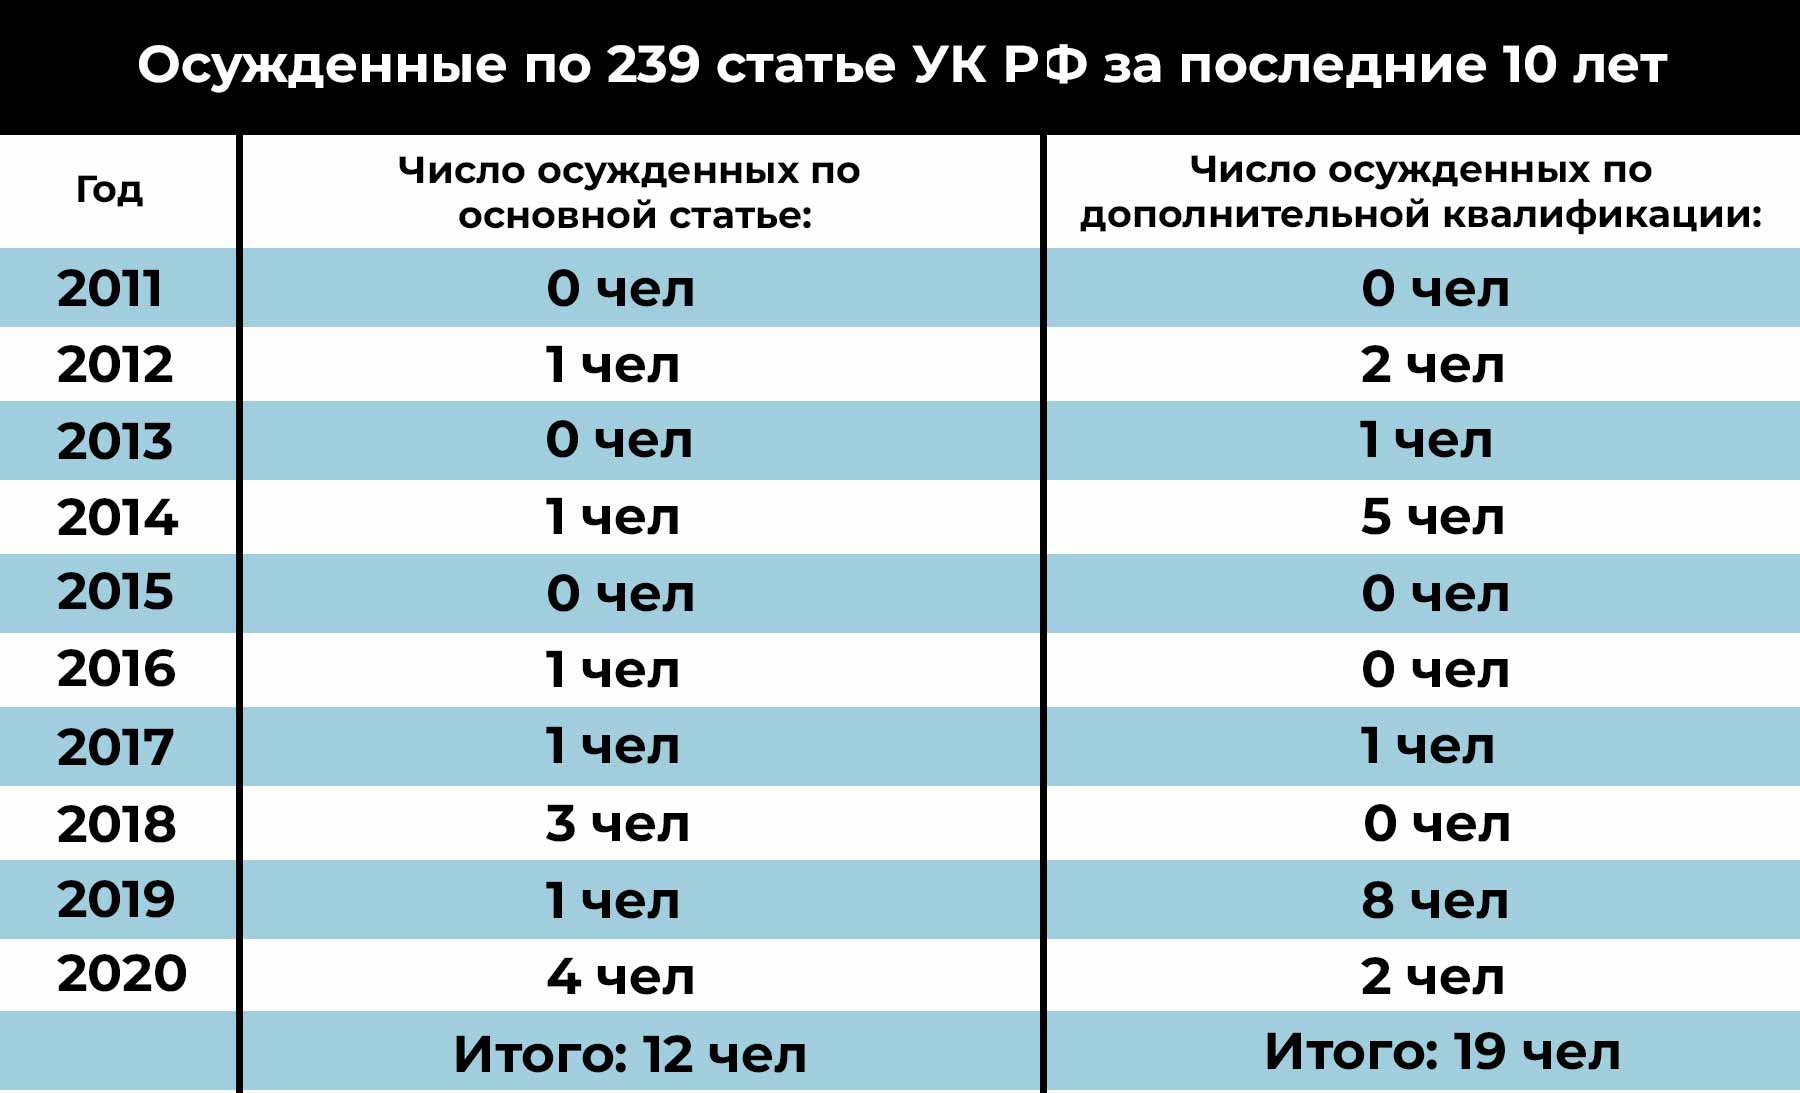 Таблица - осужденные по 239 статье УК РФ